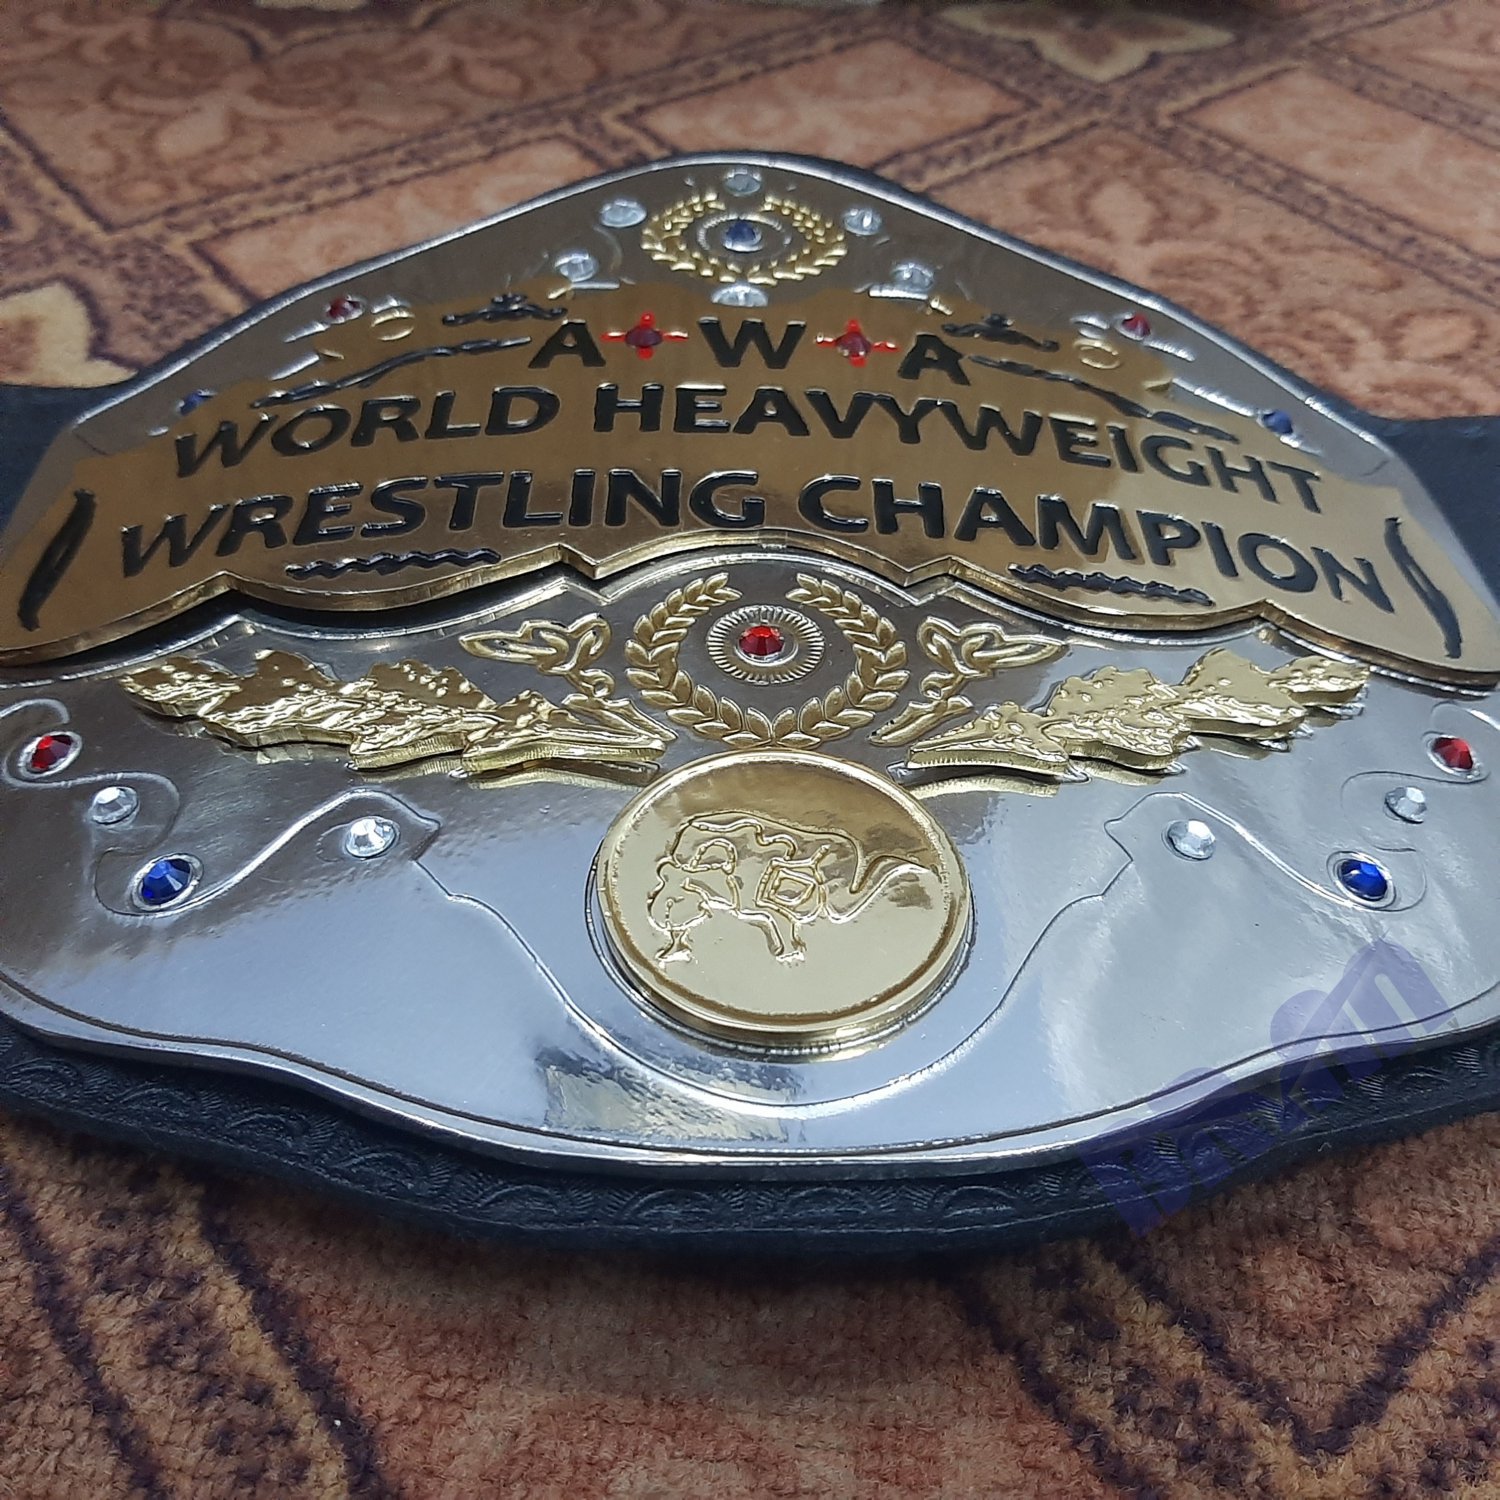 awa championship belts